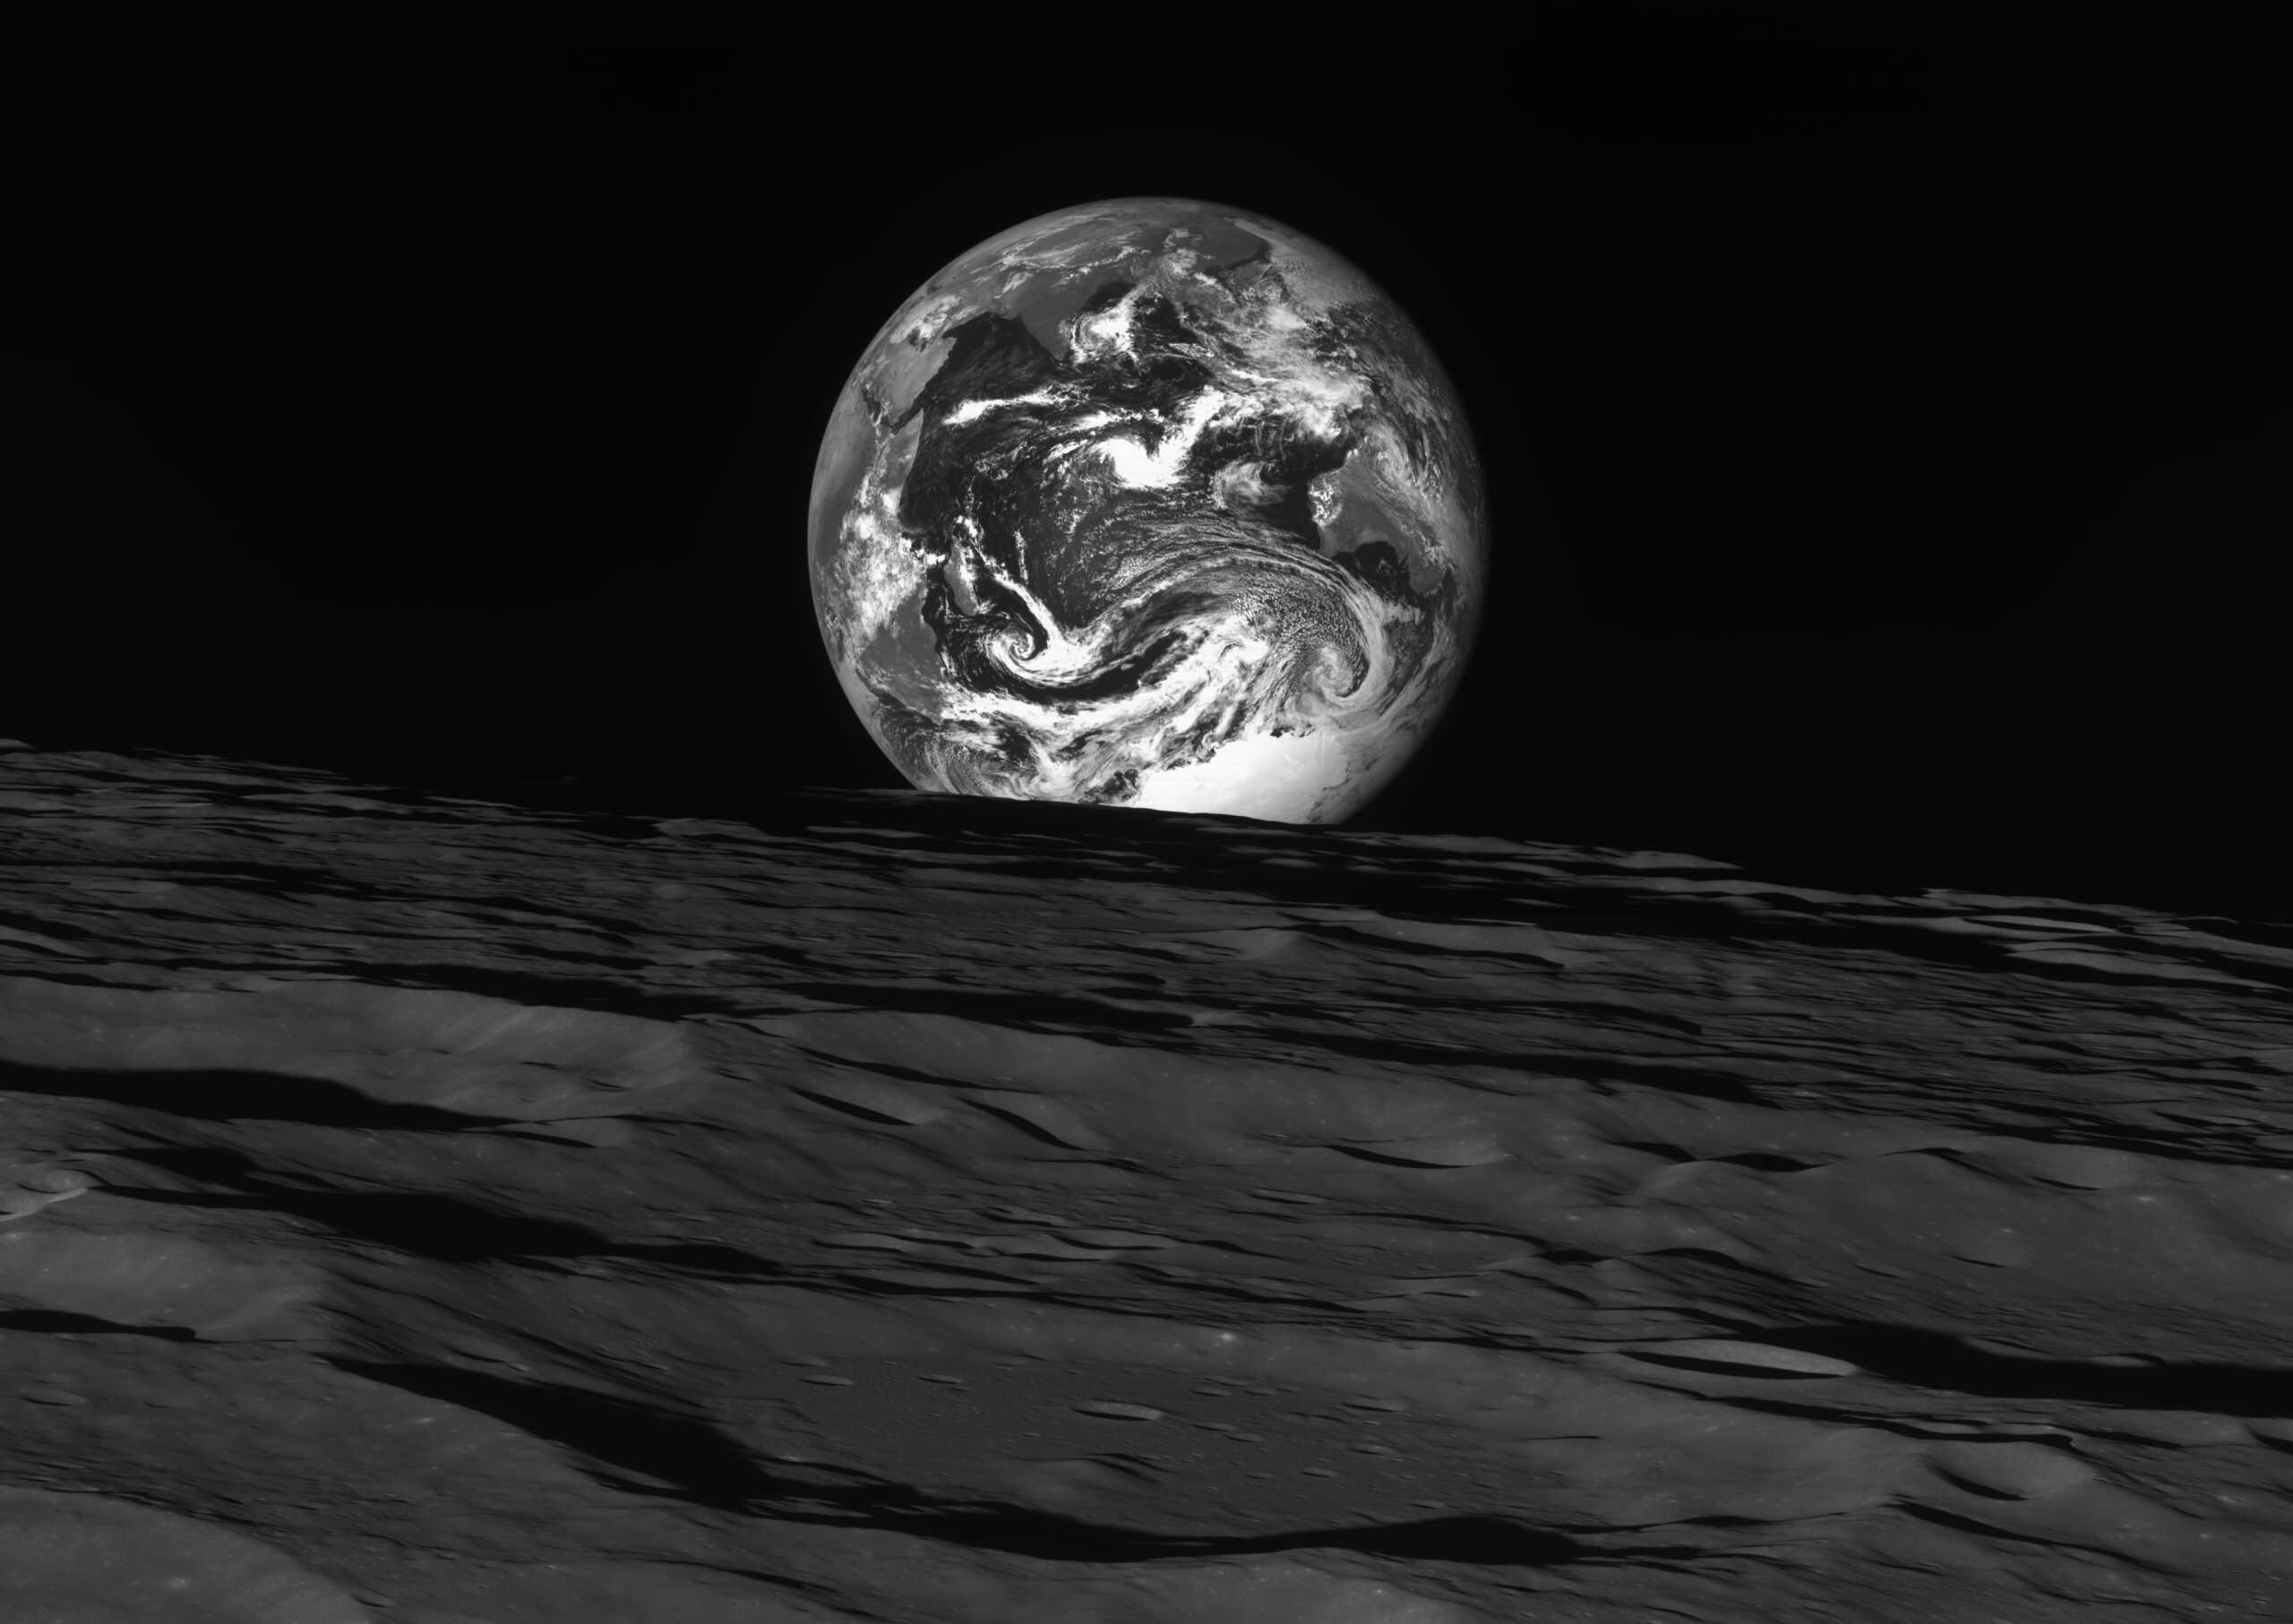 Σελήνη: Εντυπωσιακή εικόνα της Γης από το σκάφος Danuri της Νότιας Κορέας